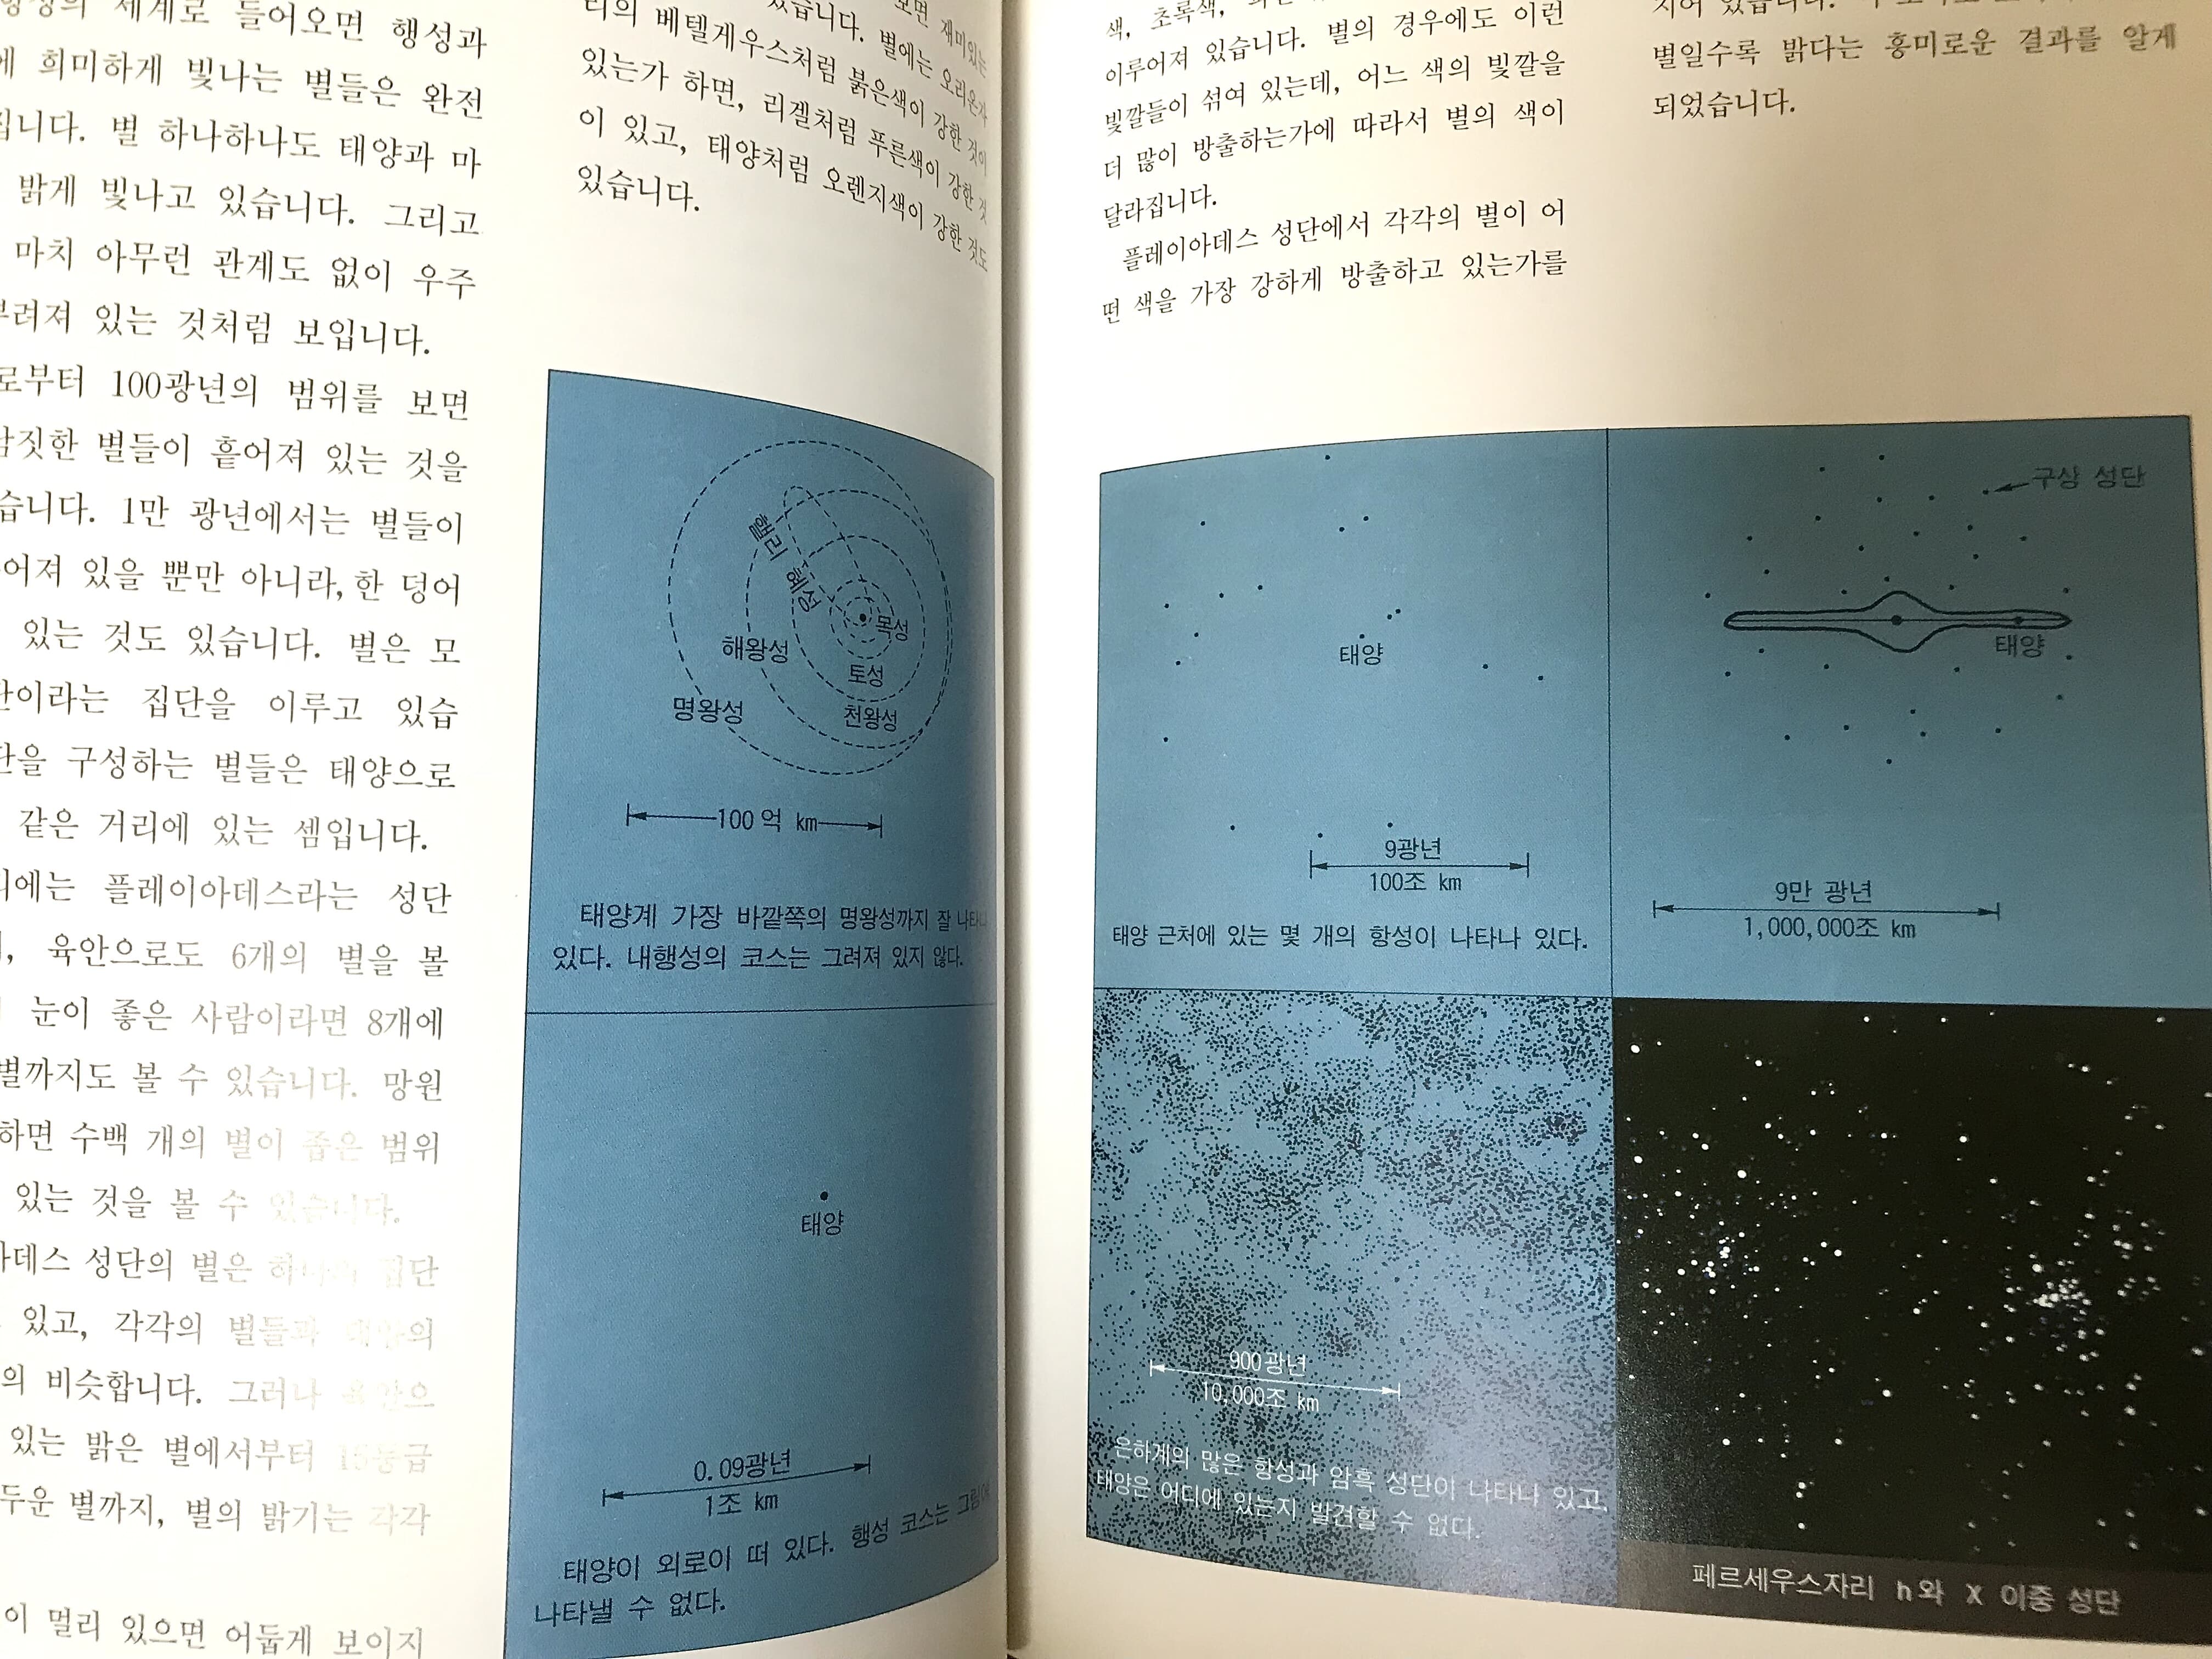 우리들의 천문 기상 지구 38권 세트